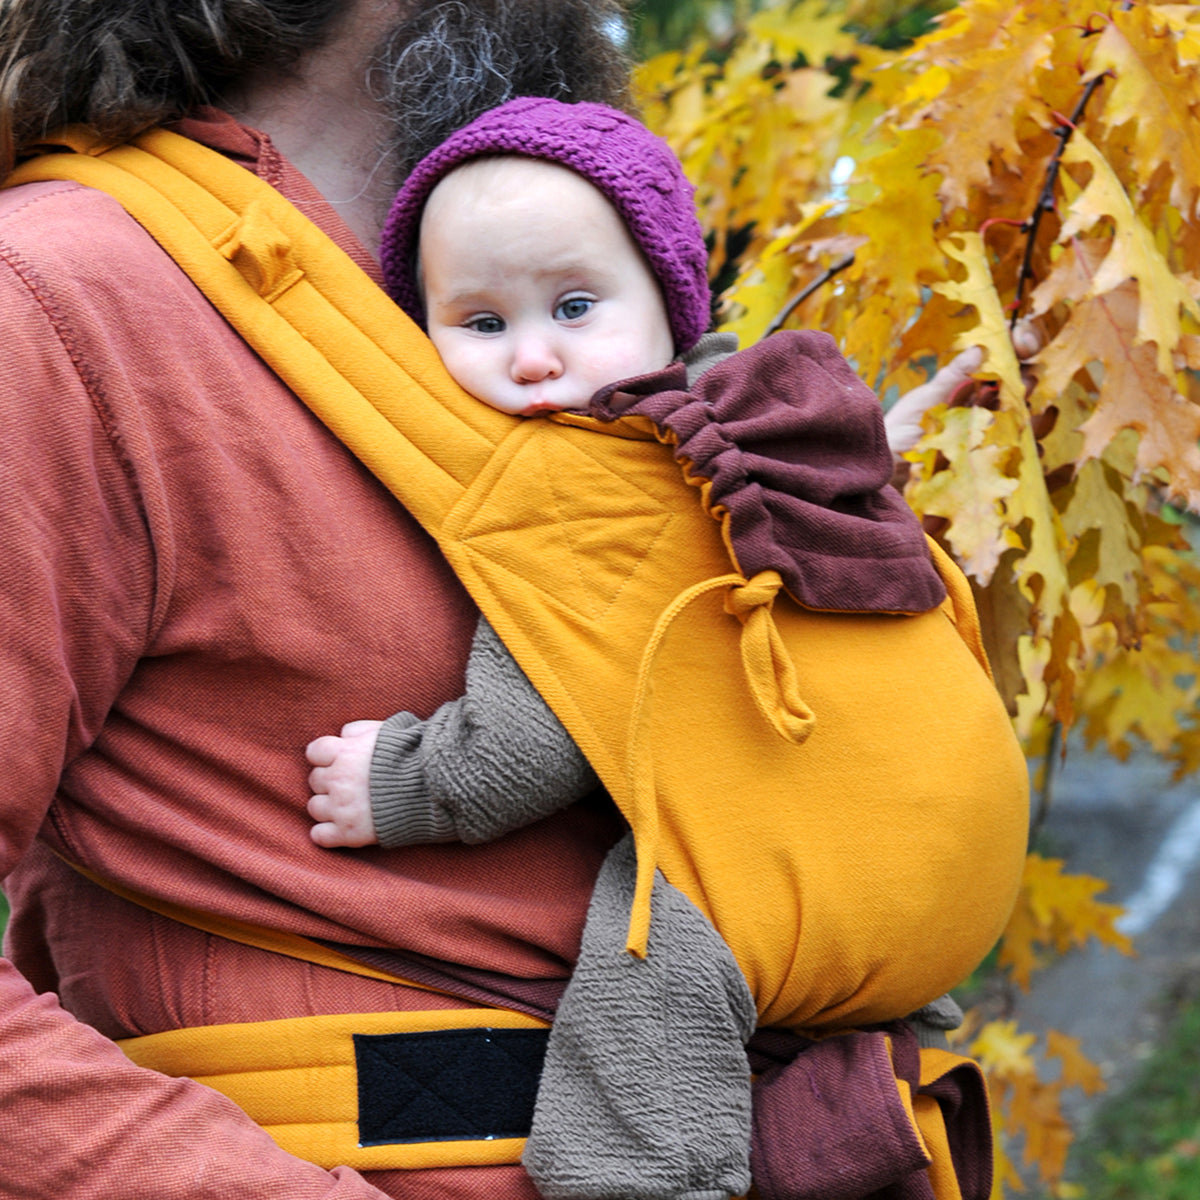 Mysol Colorado Tragebild mit Baby im Herbst